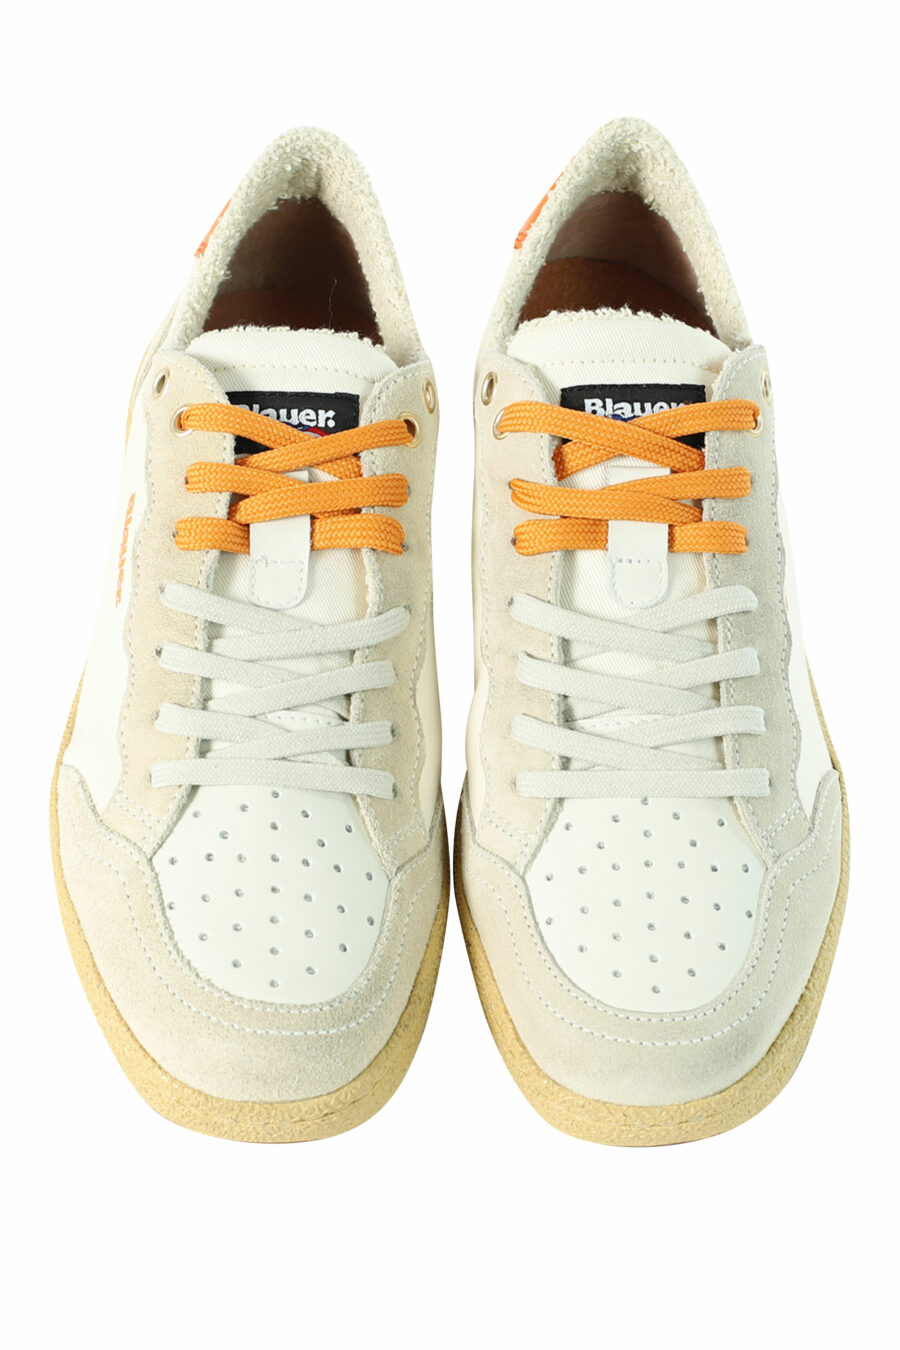 Zapatillas "MURRAY" blancas con detalles naranjas - 8058156497566 5